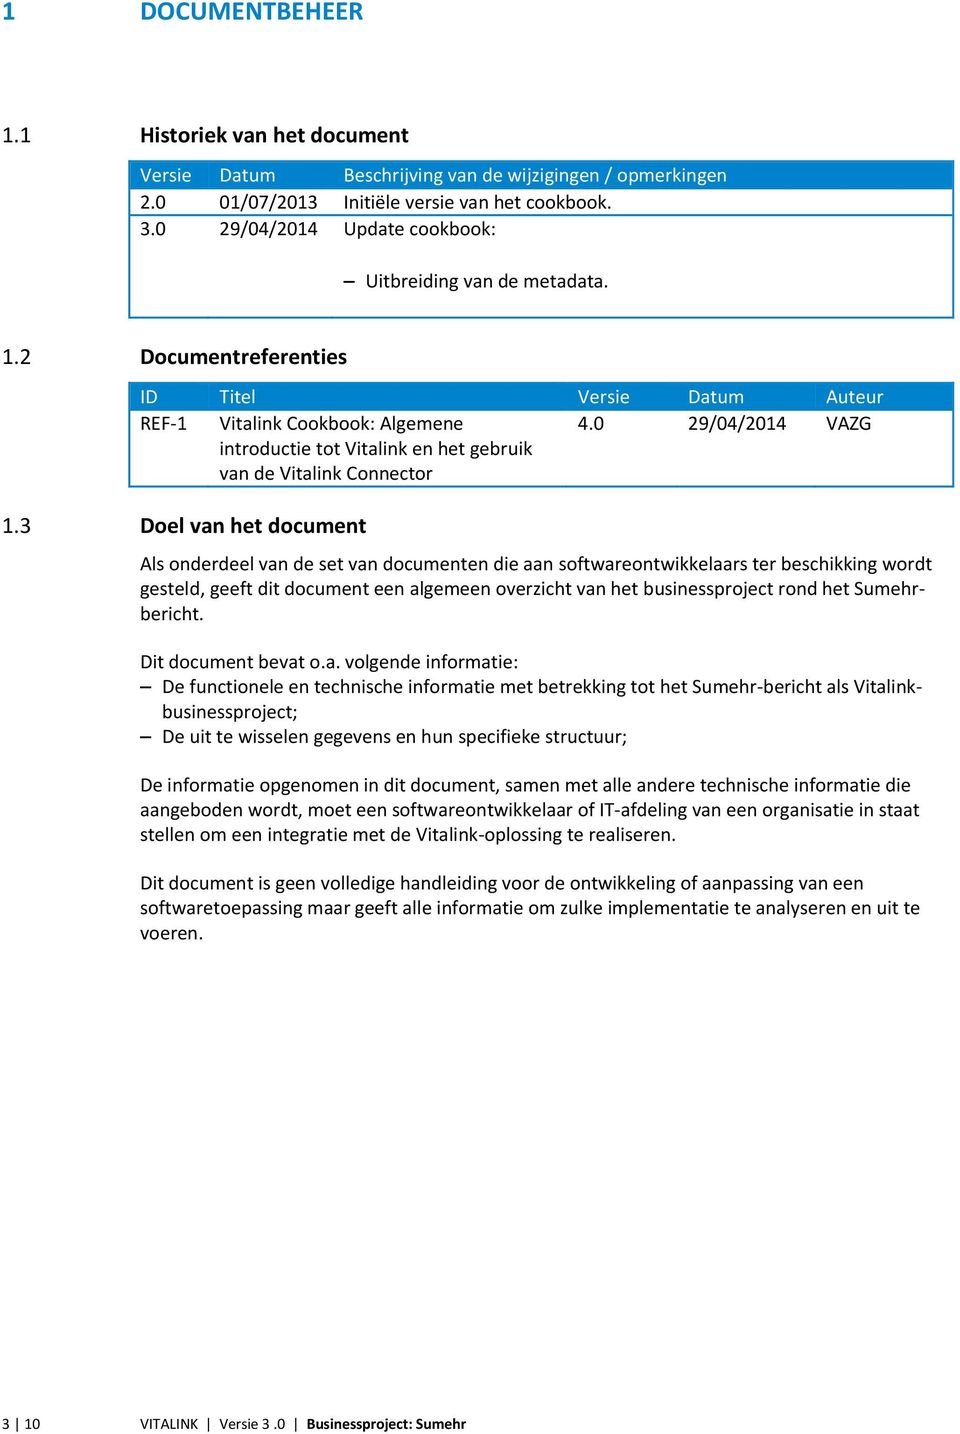 2 Documentreferenties ID Titel Versie Datum Auteur REF-1 Vitalink Cookbook: Algemene introductie tot Vitalink en het gebruik van de Vitalink Connector 4.0 29/04/2014 VAZG 1.